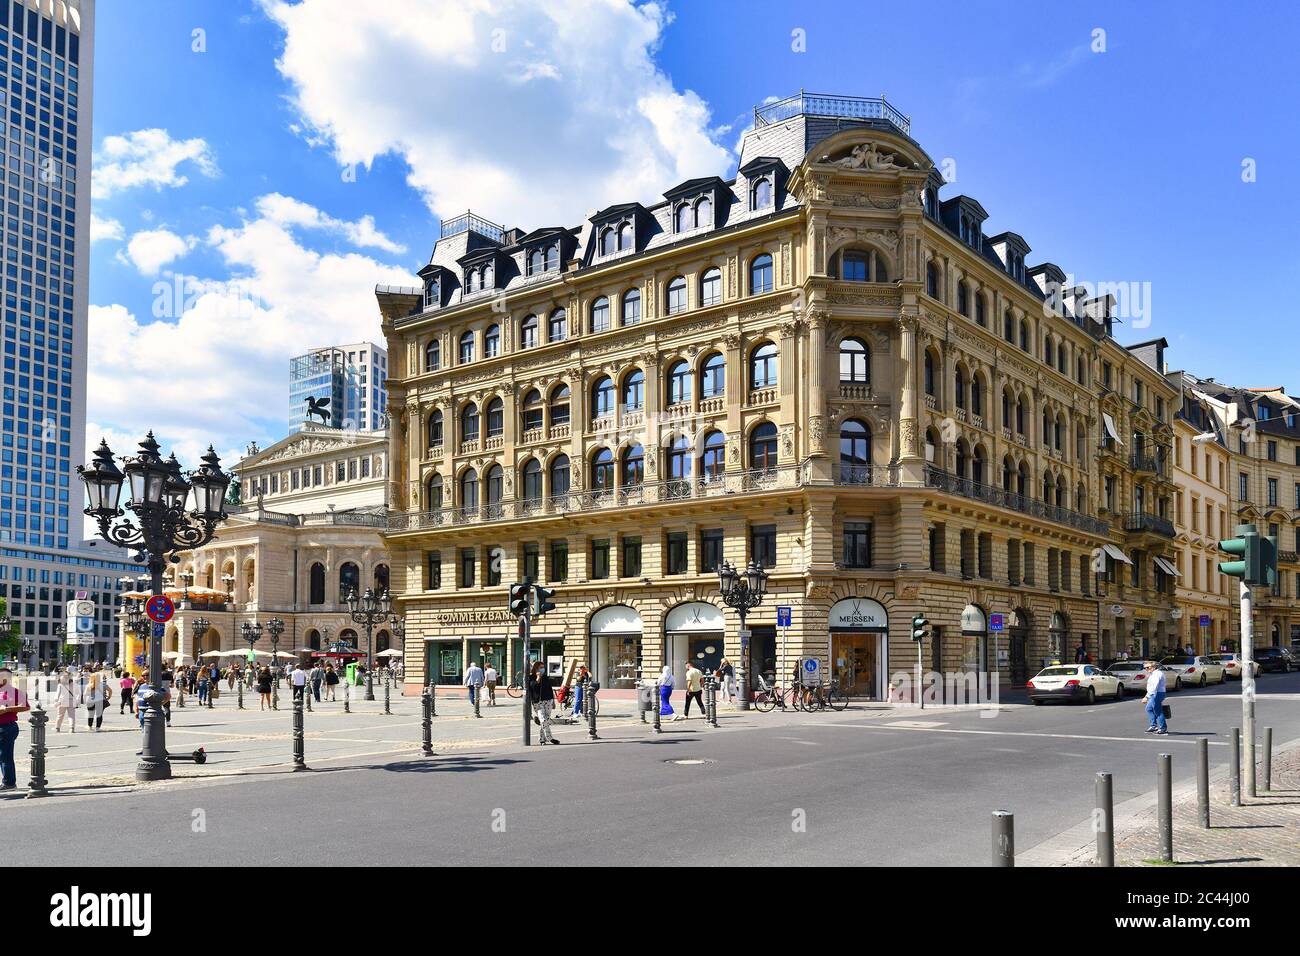 Francfort-sur-le-main, Allemagne - juin 2020: Bâtiment historique avec siège de la banque allemande "Commerzbank" à l'intérieur du centre-ville avec des personnes marchant Banque D'Images